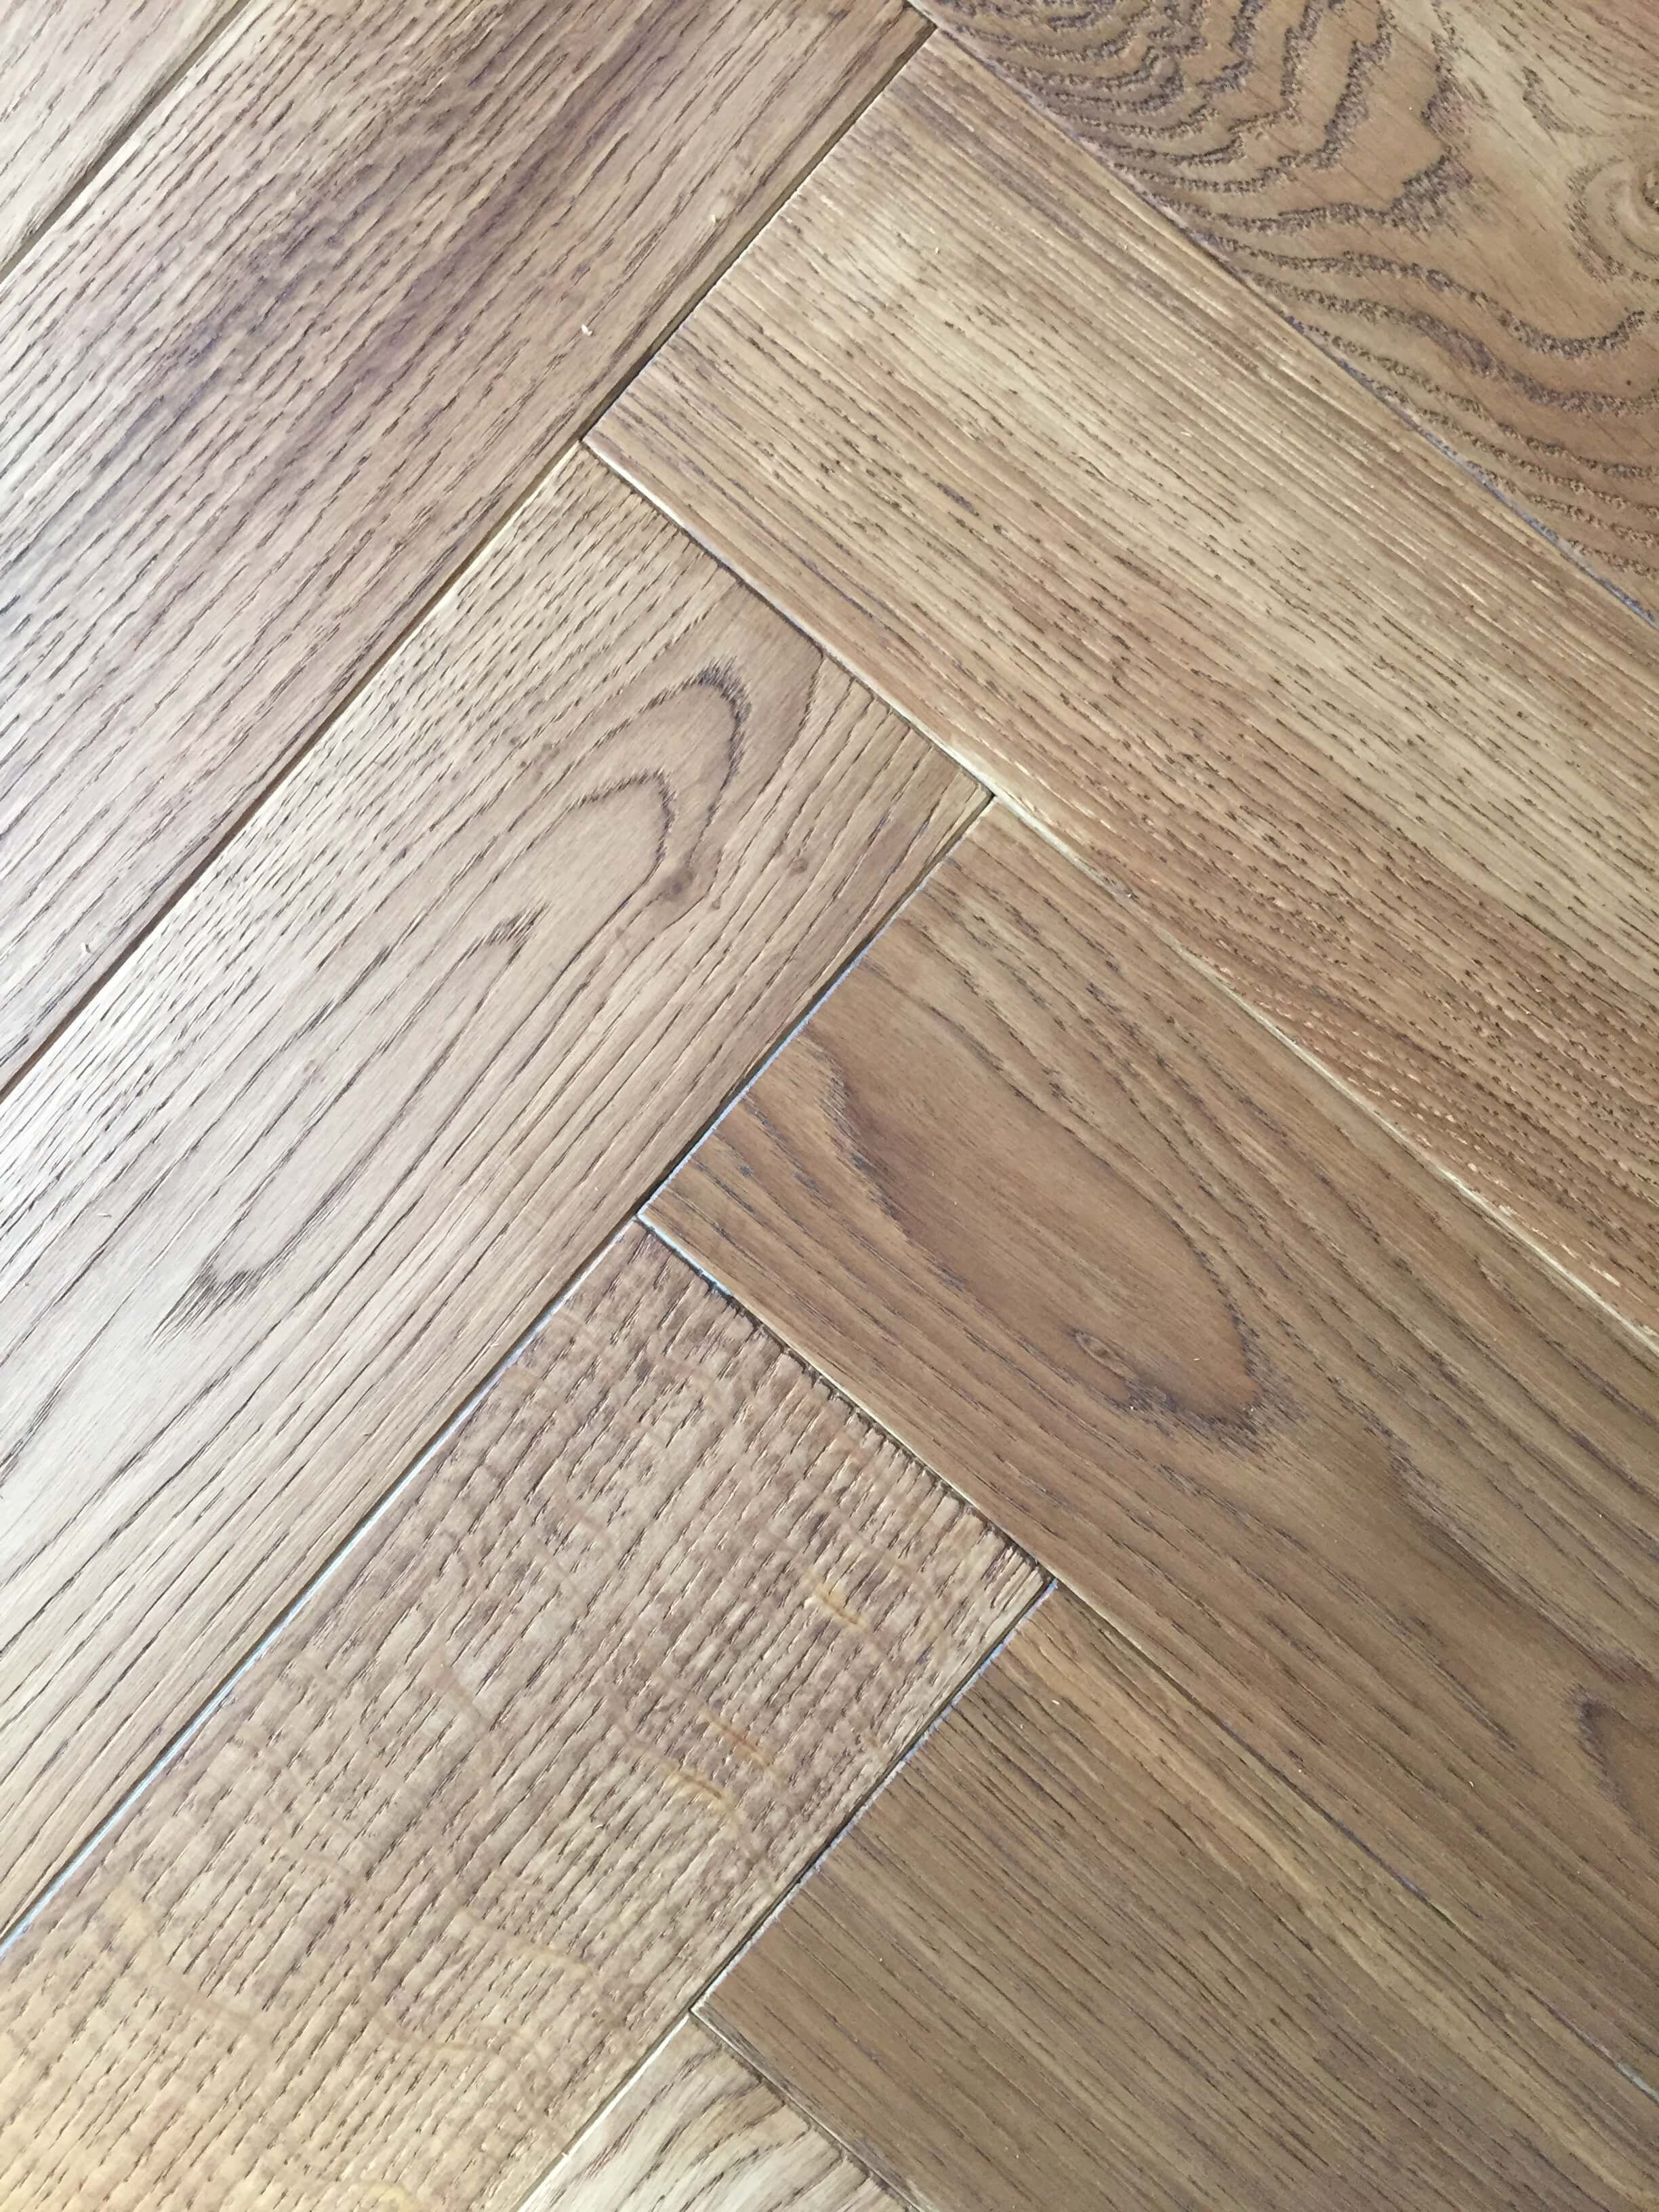 20 Trendy Hickory Hardwood Flooring Cost 2024 free download hickory hardwood flooring cost of hardwood installation floor plan ideas inside 40 light oak engineered hardwood flooring ideas